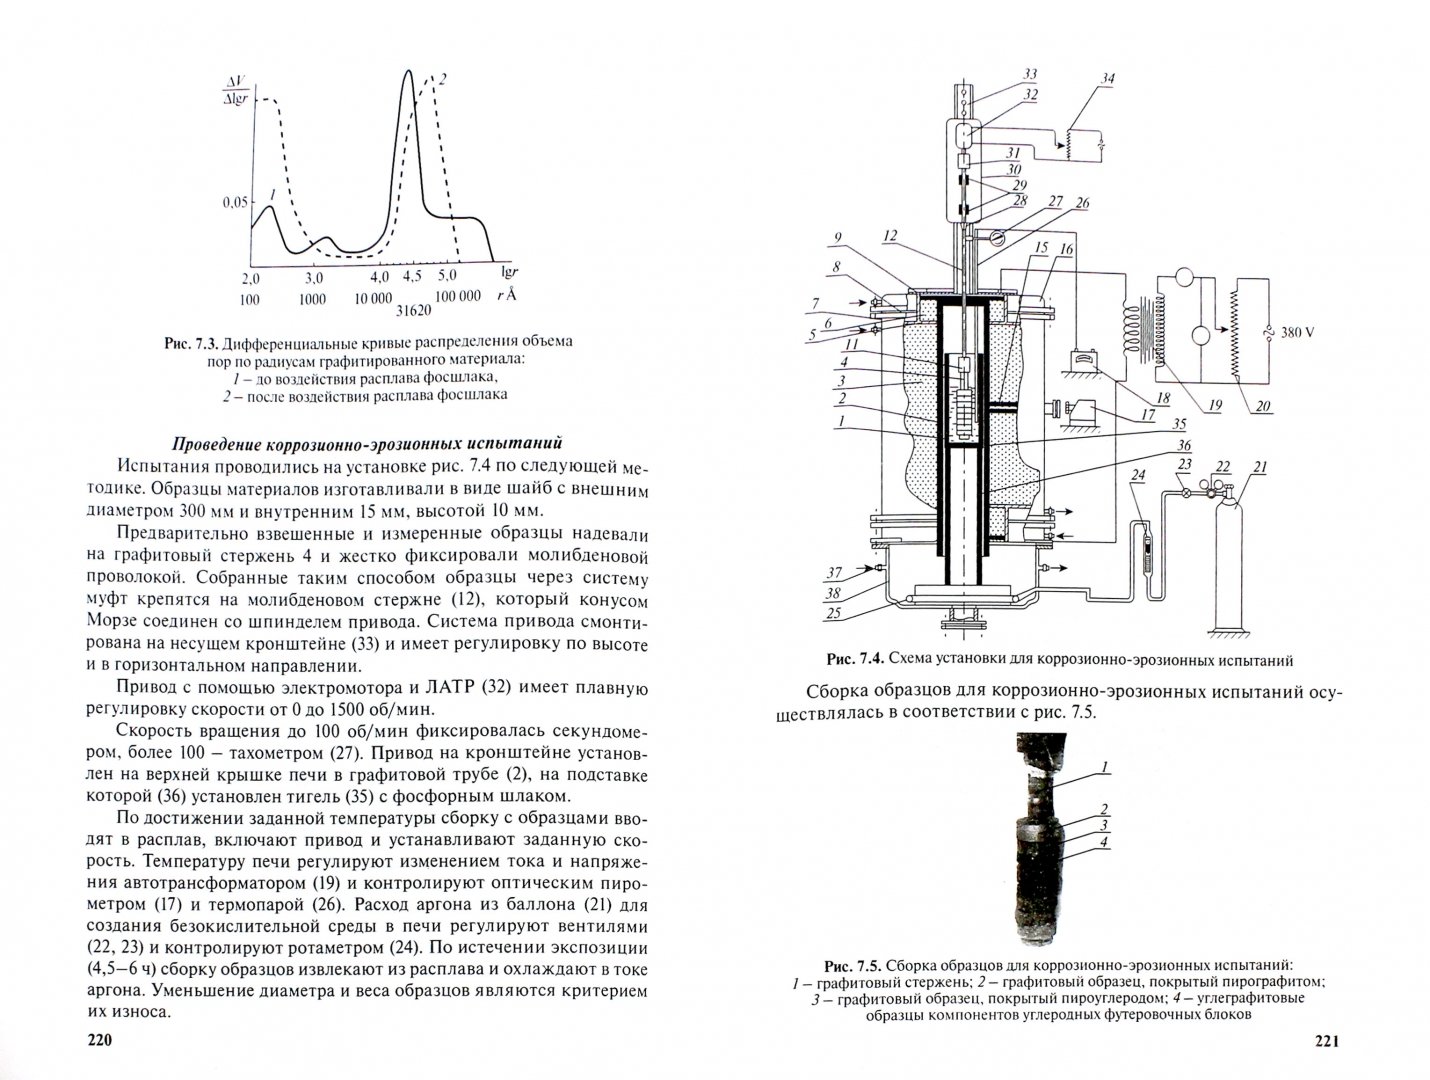 Иллюстрация 2 из 2 для Коррозионно-стойкие трубы и емкости из стеклопластиков: материалы, свойства, технологии - Лебедев, Наумец | Лабиринт - книги. Источник: Лабиринт